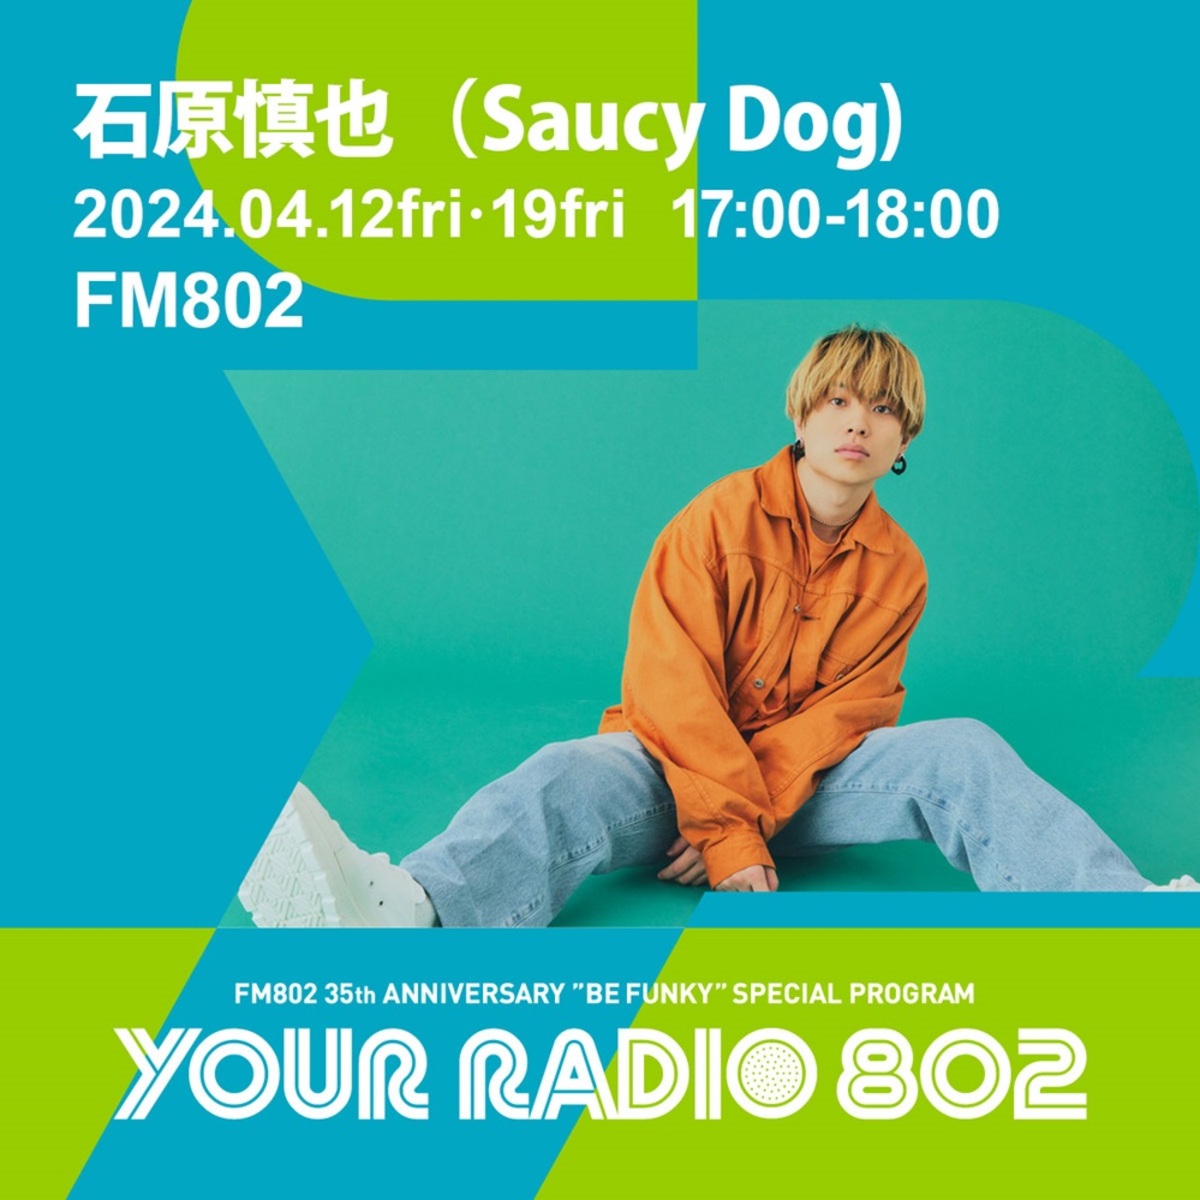 石原慎也（Saucy Dog）、FM802の35周年記念番組